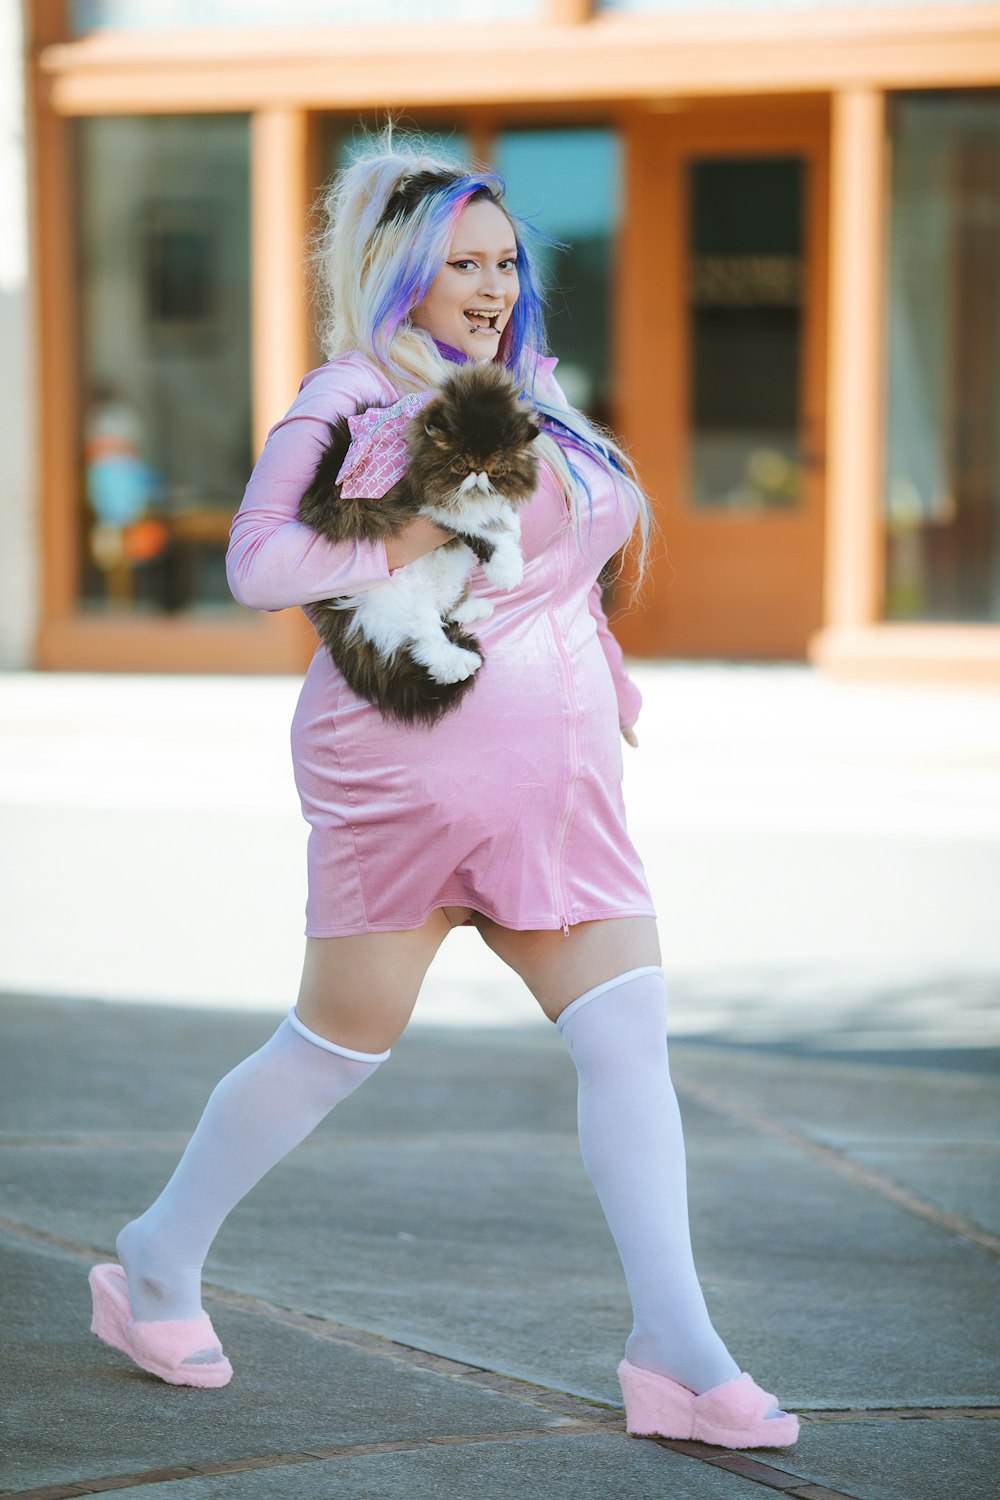 Eine Frau in einem rosa Kleid, die eine Katze hält